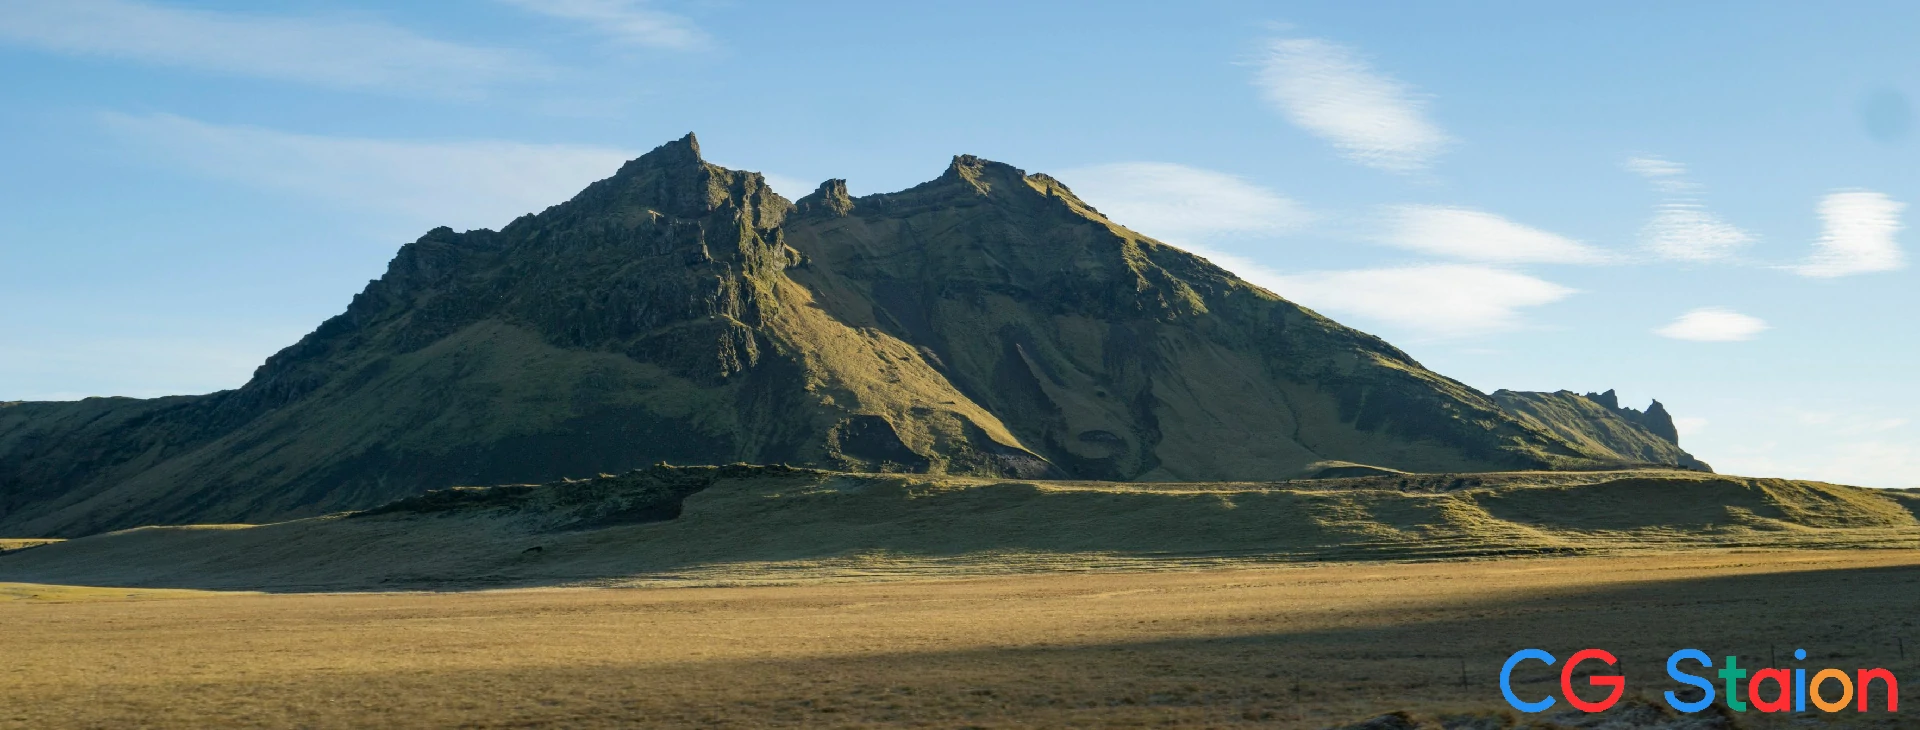 838组冰岛山脉地形景观高清参考图片合集2